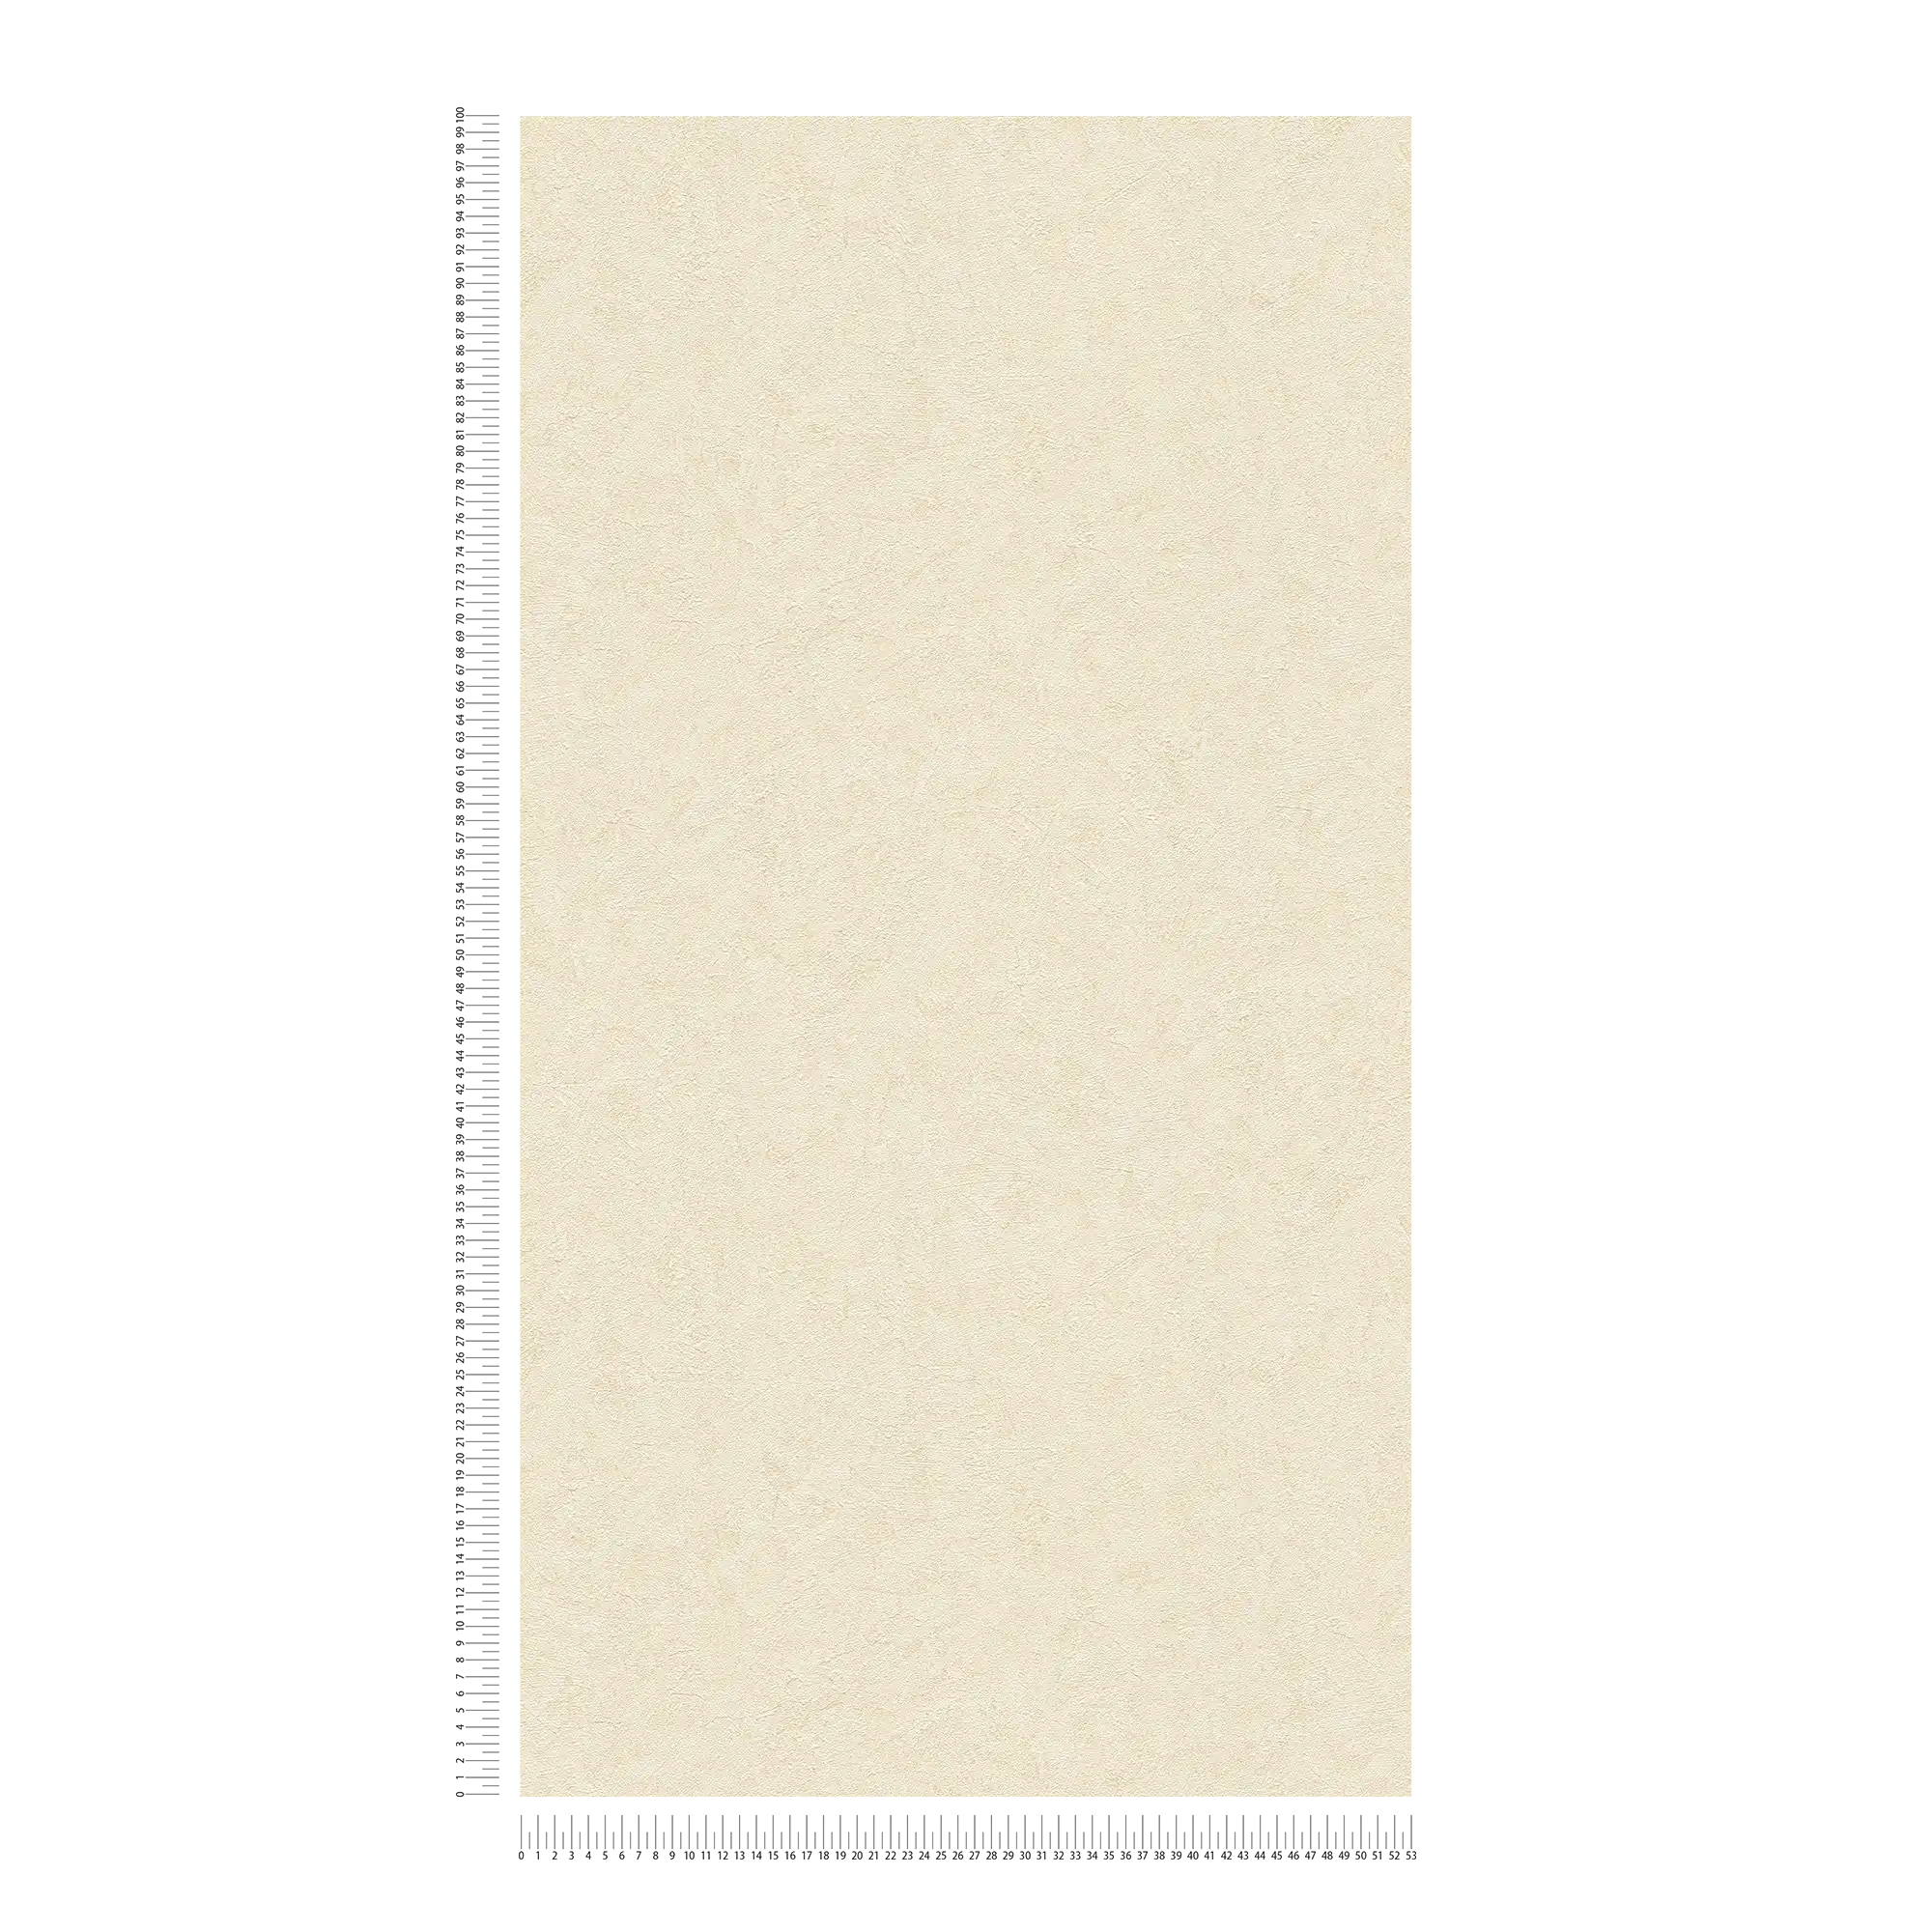             Carta da parati a tinta unita con struttura in gesso e sfumature di colore - beige, crema
        